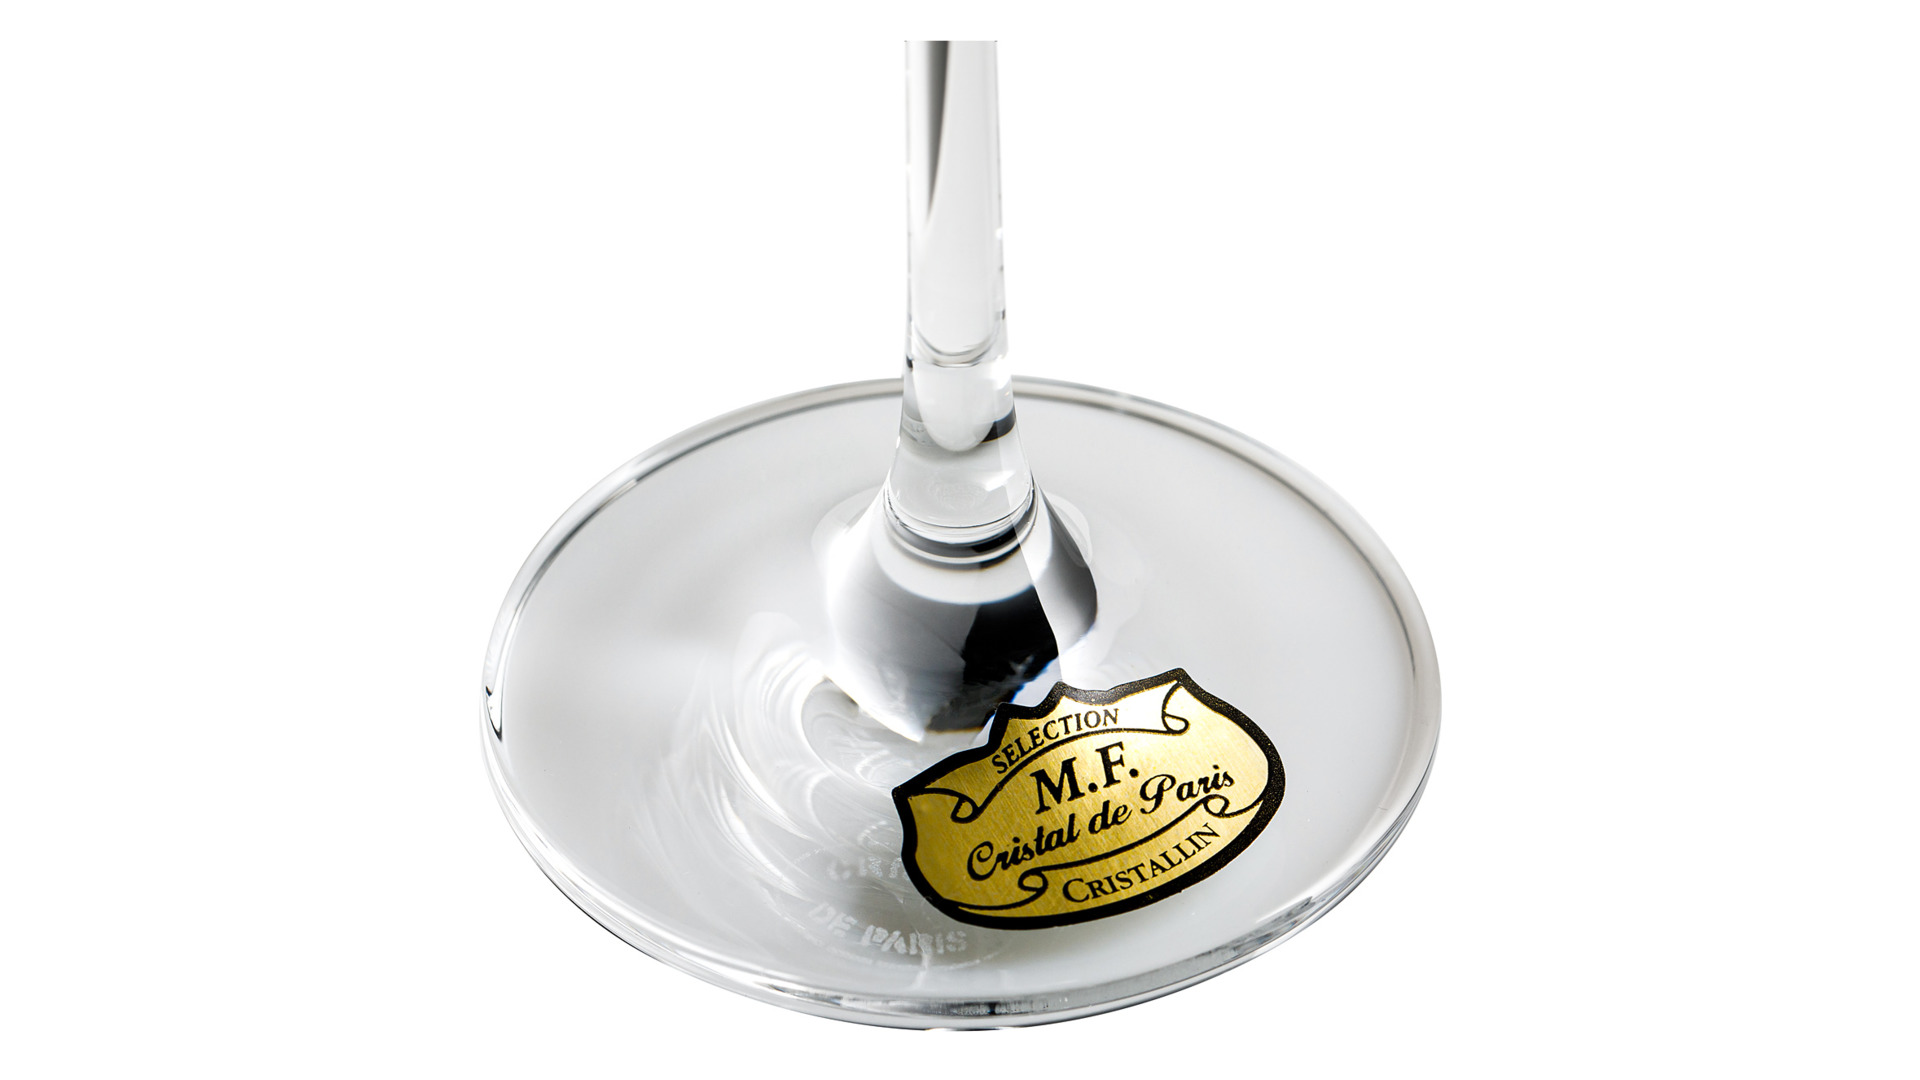 Набор фужеров для шампанского Cristal de Paris Люксор 230 мл, хрусталь, 6 шт